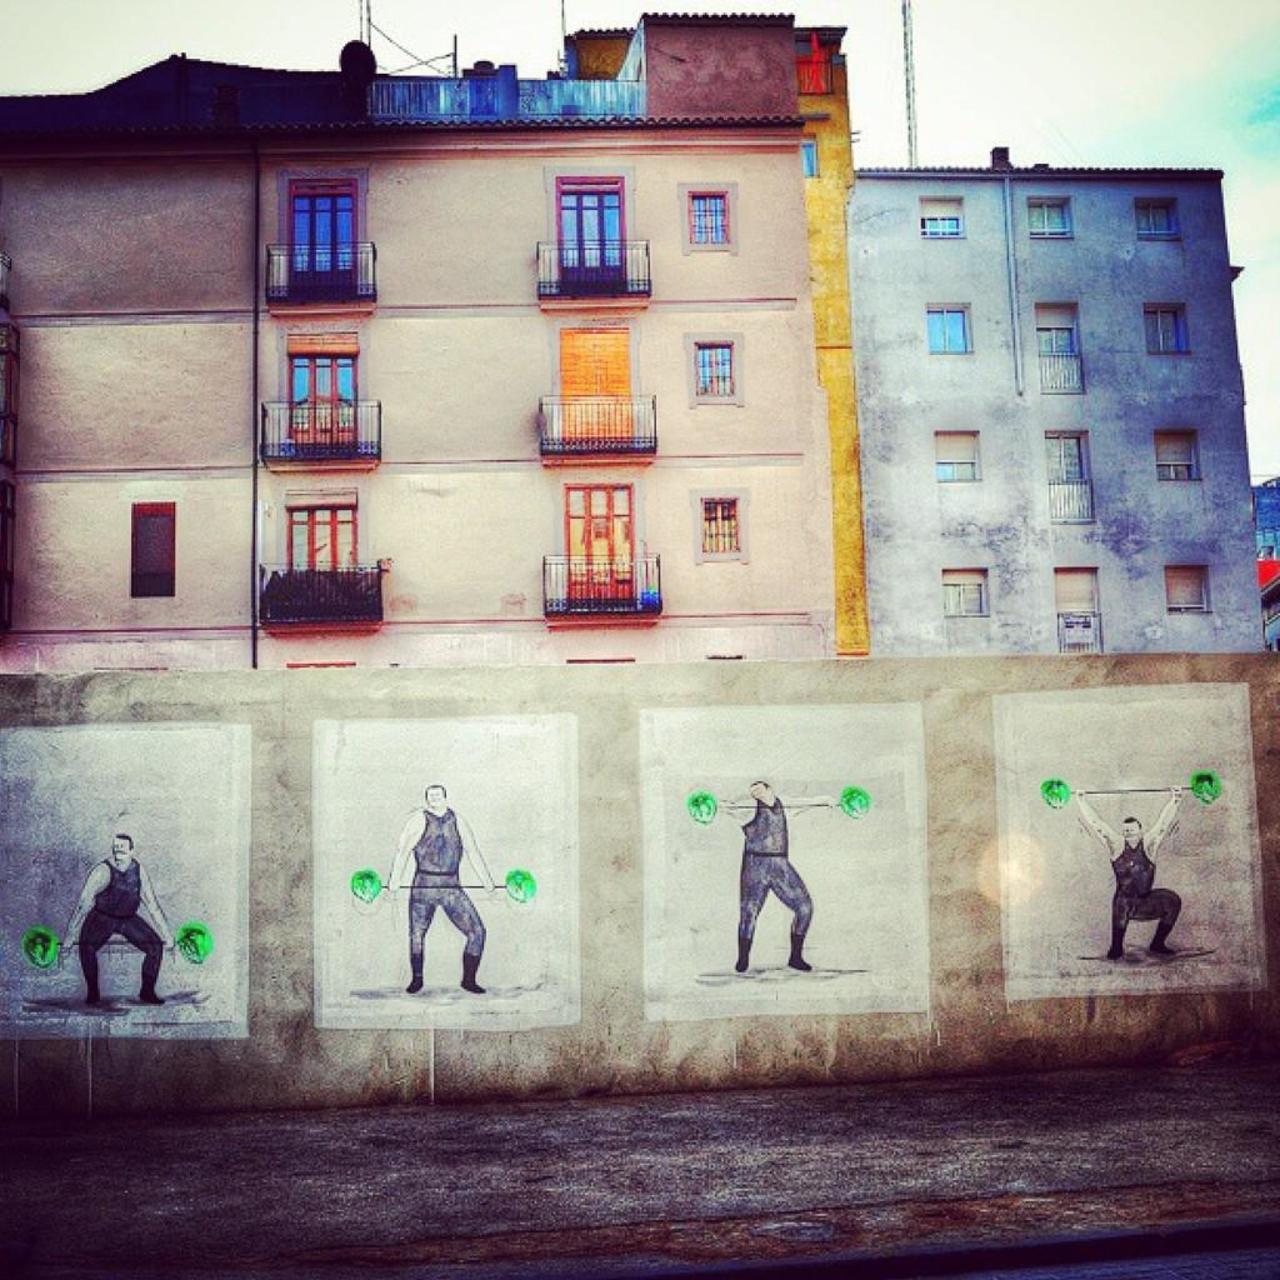 #graffitiart #mural #murales #muralart #urbanart #graffiti #StreetArt http://t.co/rZ37KZ9tE7